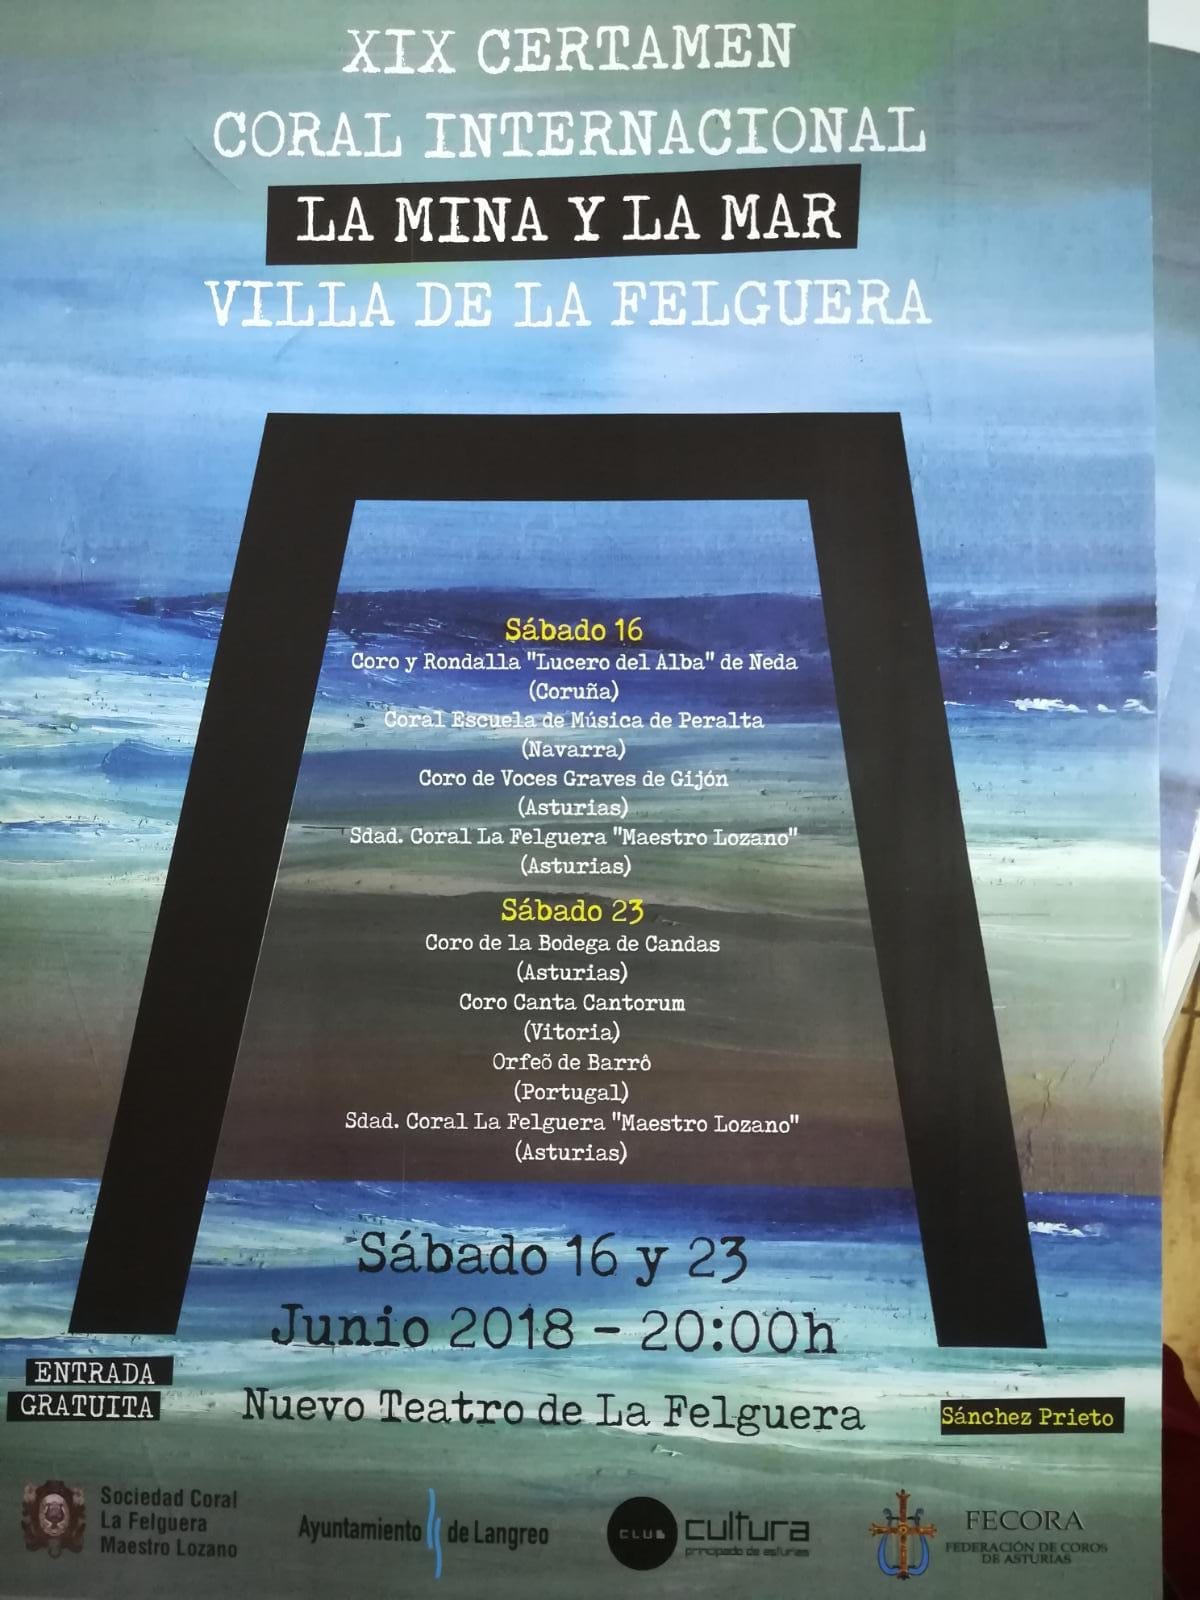 XIX Certamen Coral Internacional ” La Mina y La Mar ” Villa de La Felguera (Asturias), con el Coro Canta Cantorum, sábado 16 y 23 de junio 2018